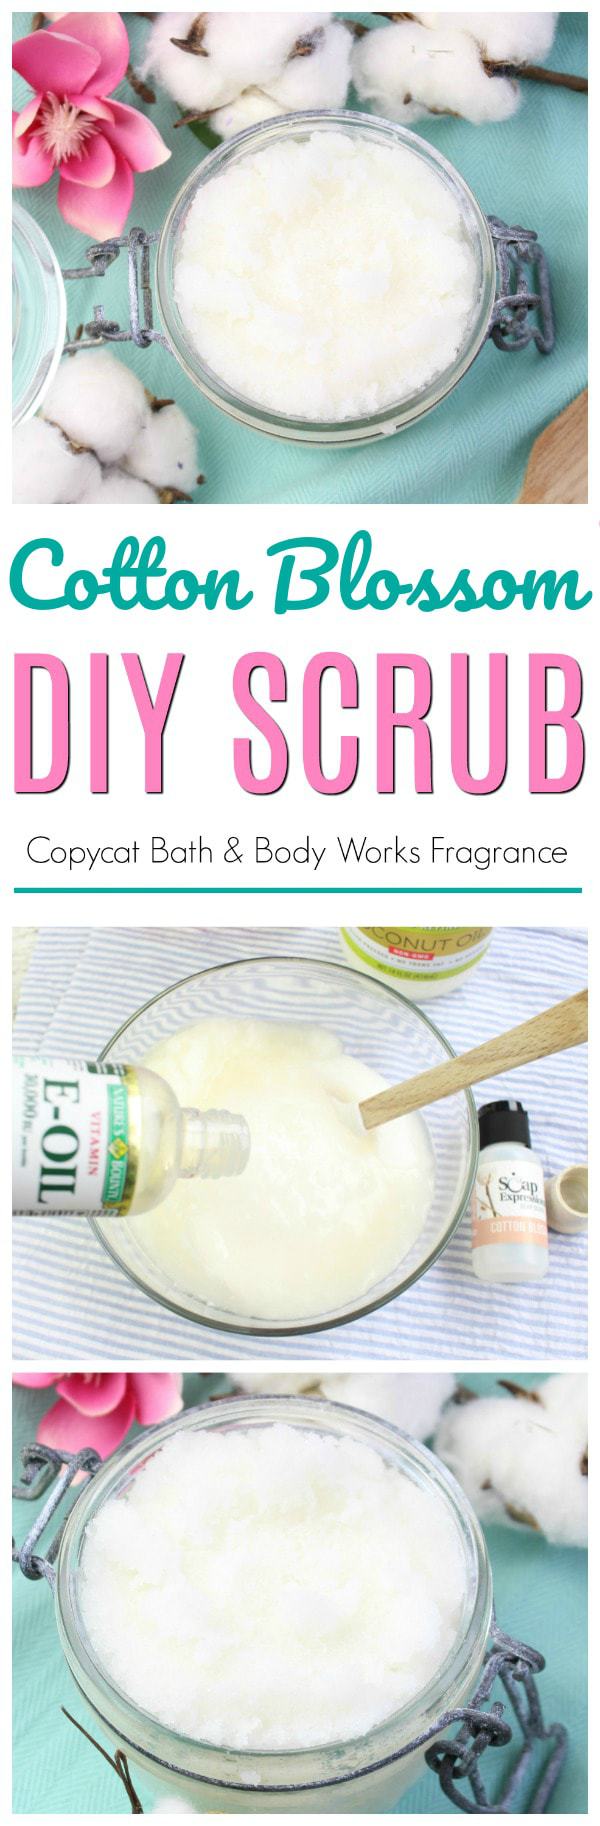 sugar scrub, diy scrub, cotton blossom scrub, bath & body works copy cat scrub recipe, homemade diy scrubs, homemade scrub